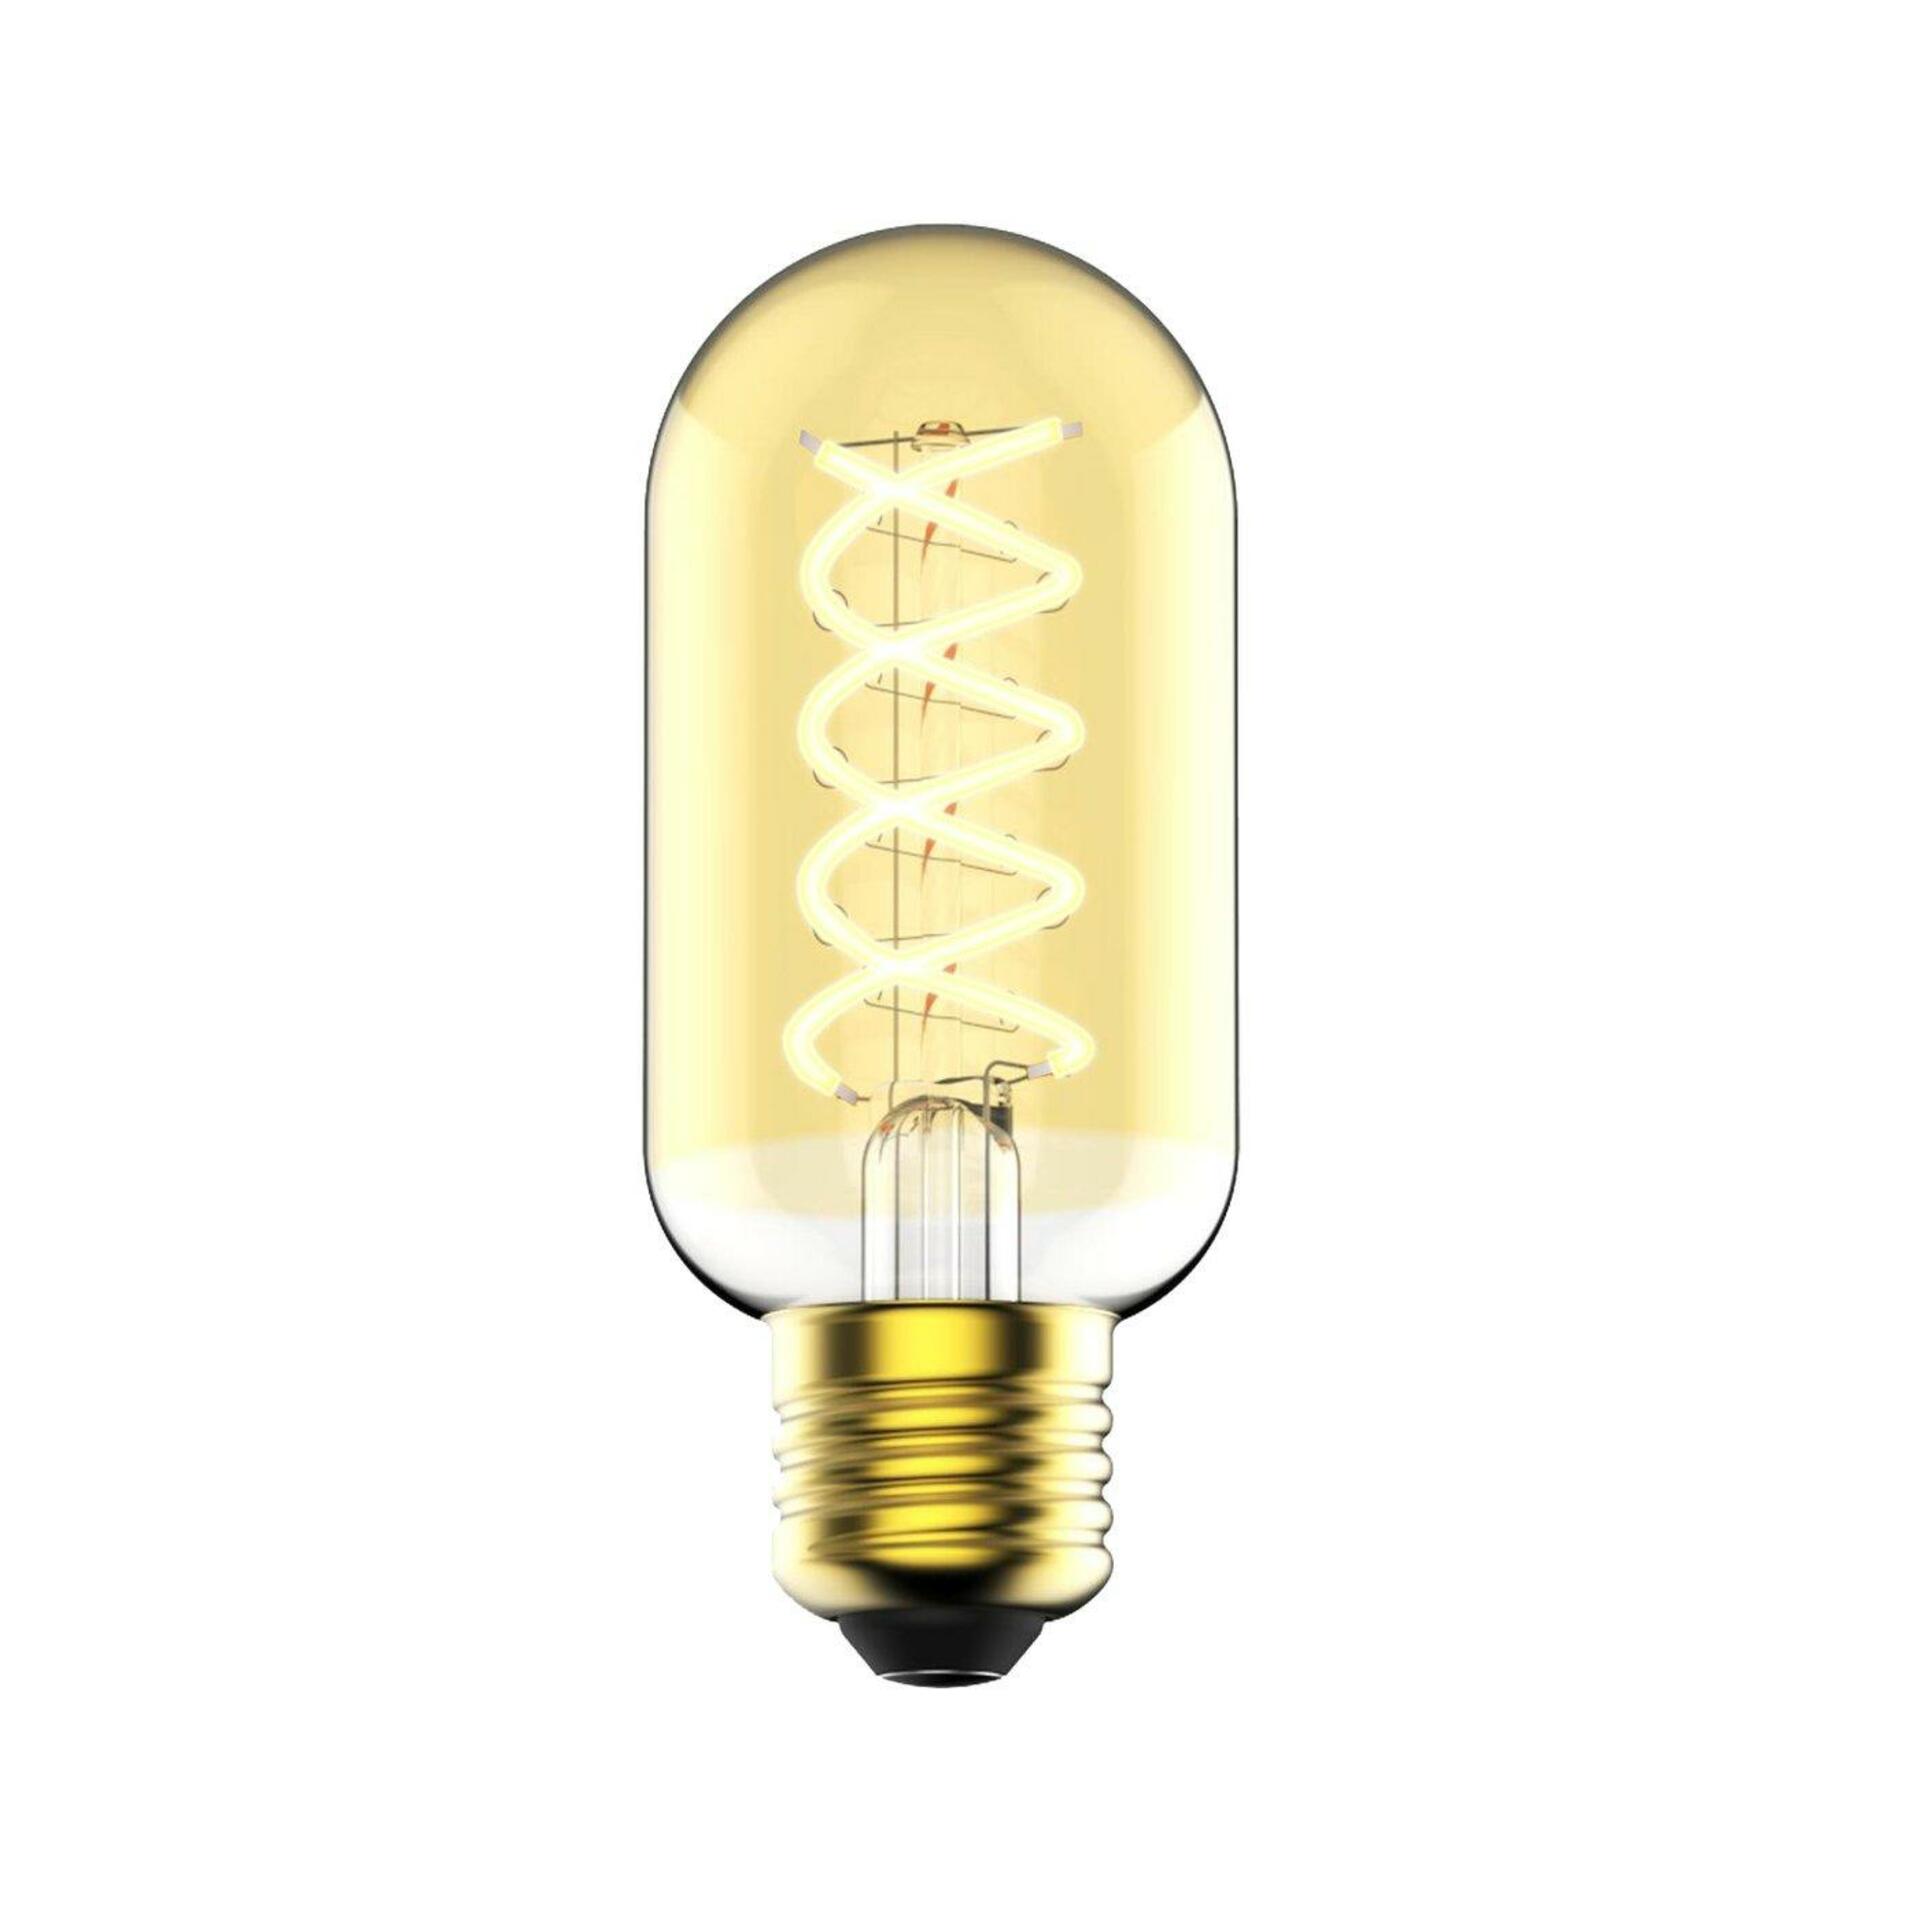 NORDLUX LED žárovka trubková E27 4,5W T45 zlatá 2080132758